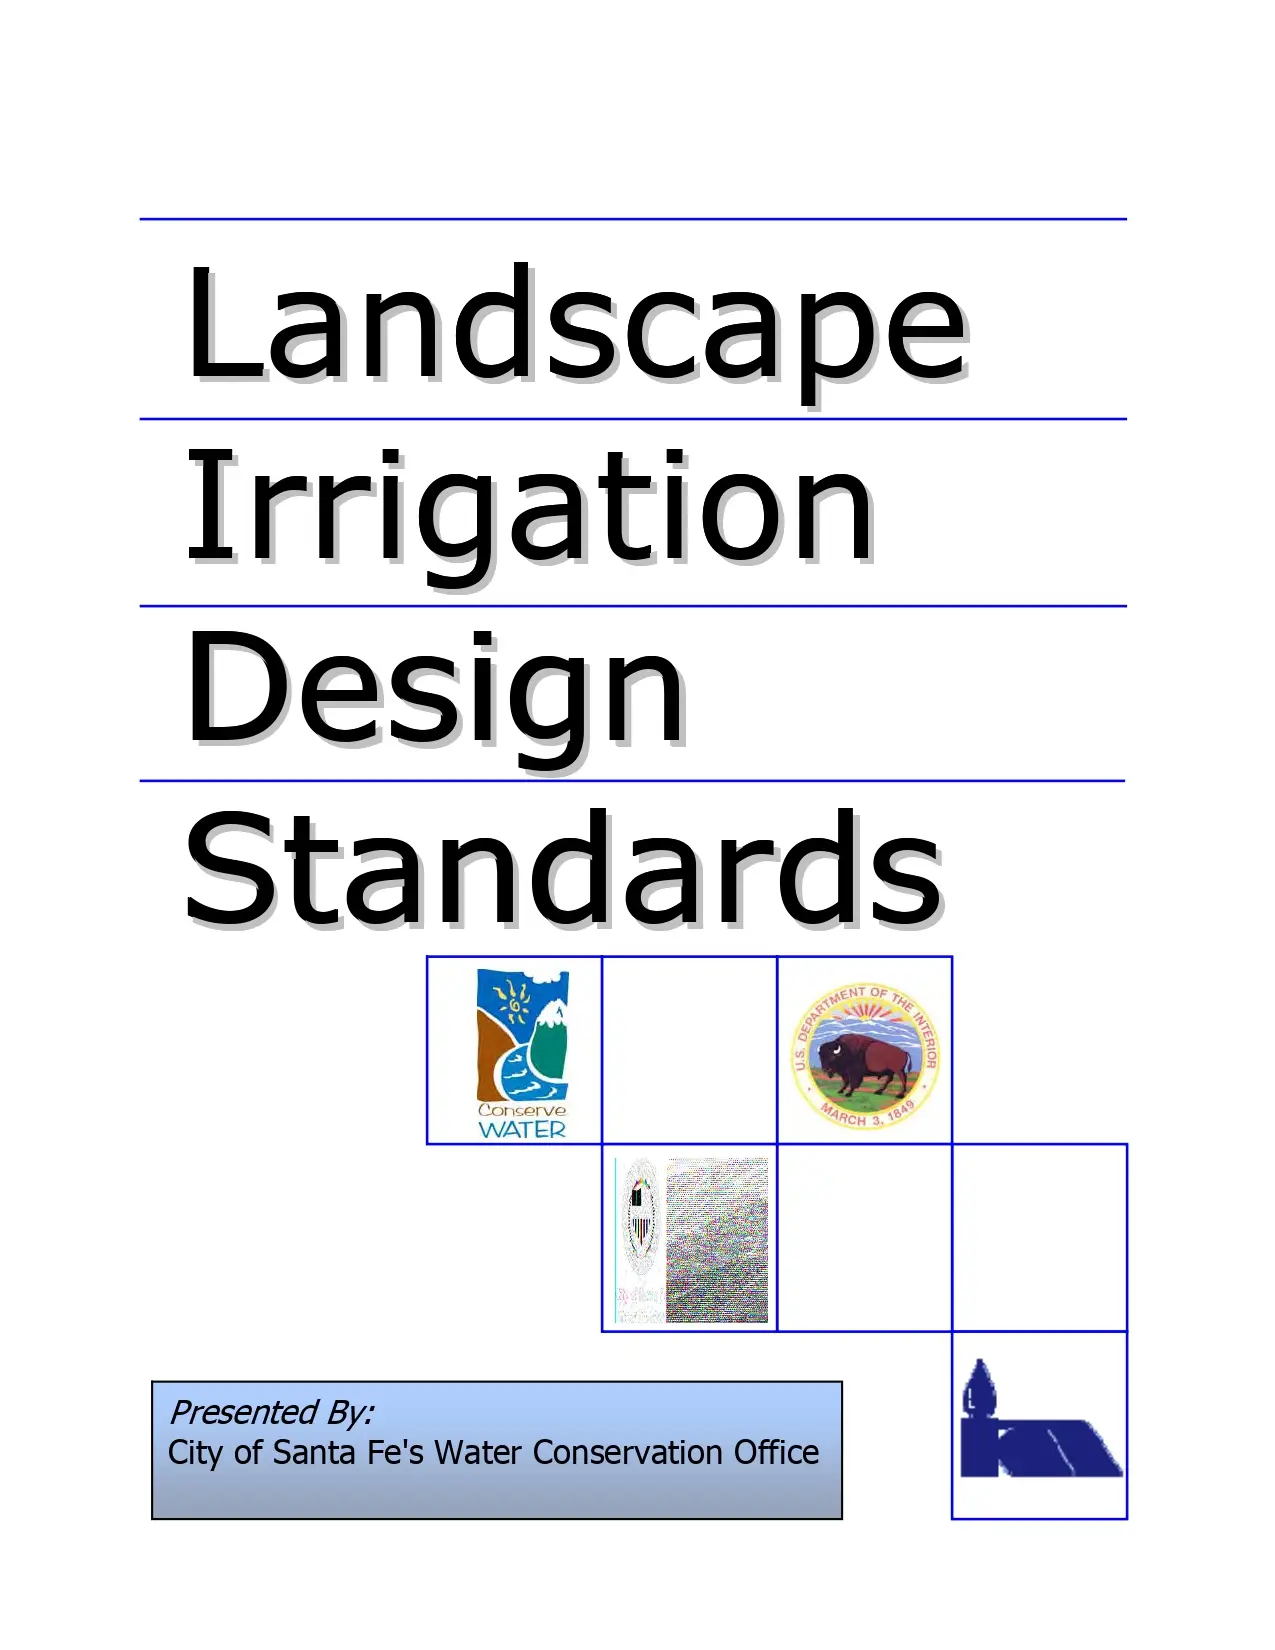 Landscape Irrigation Design Standards